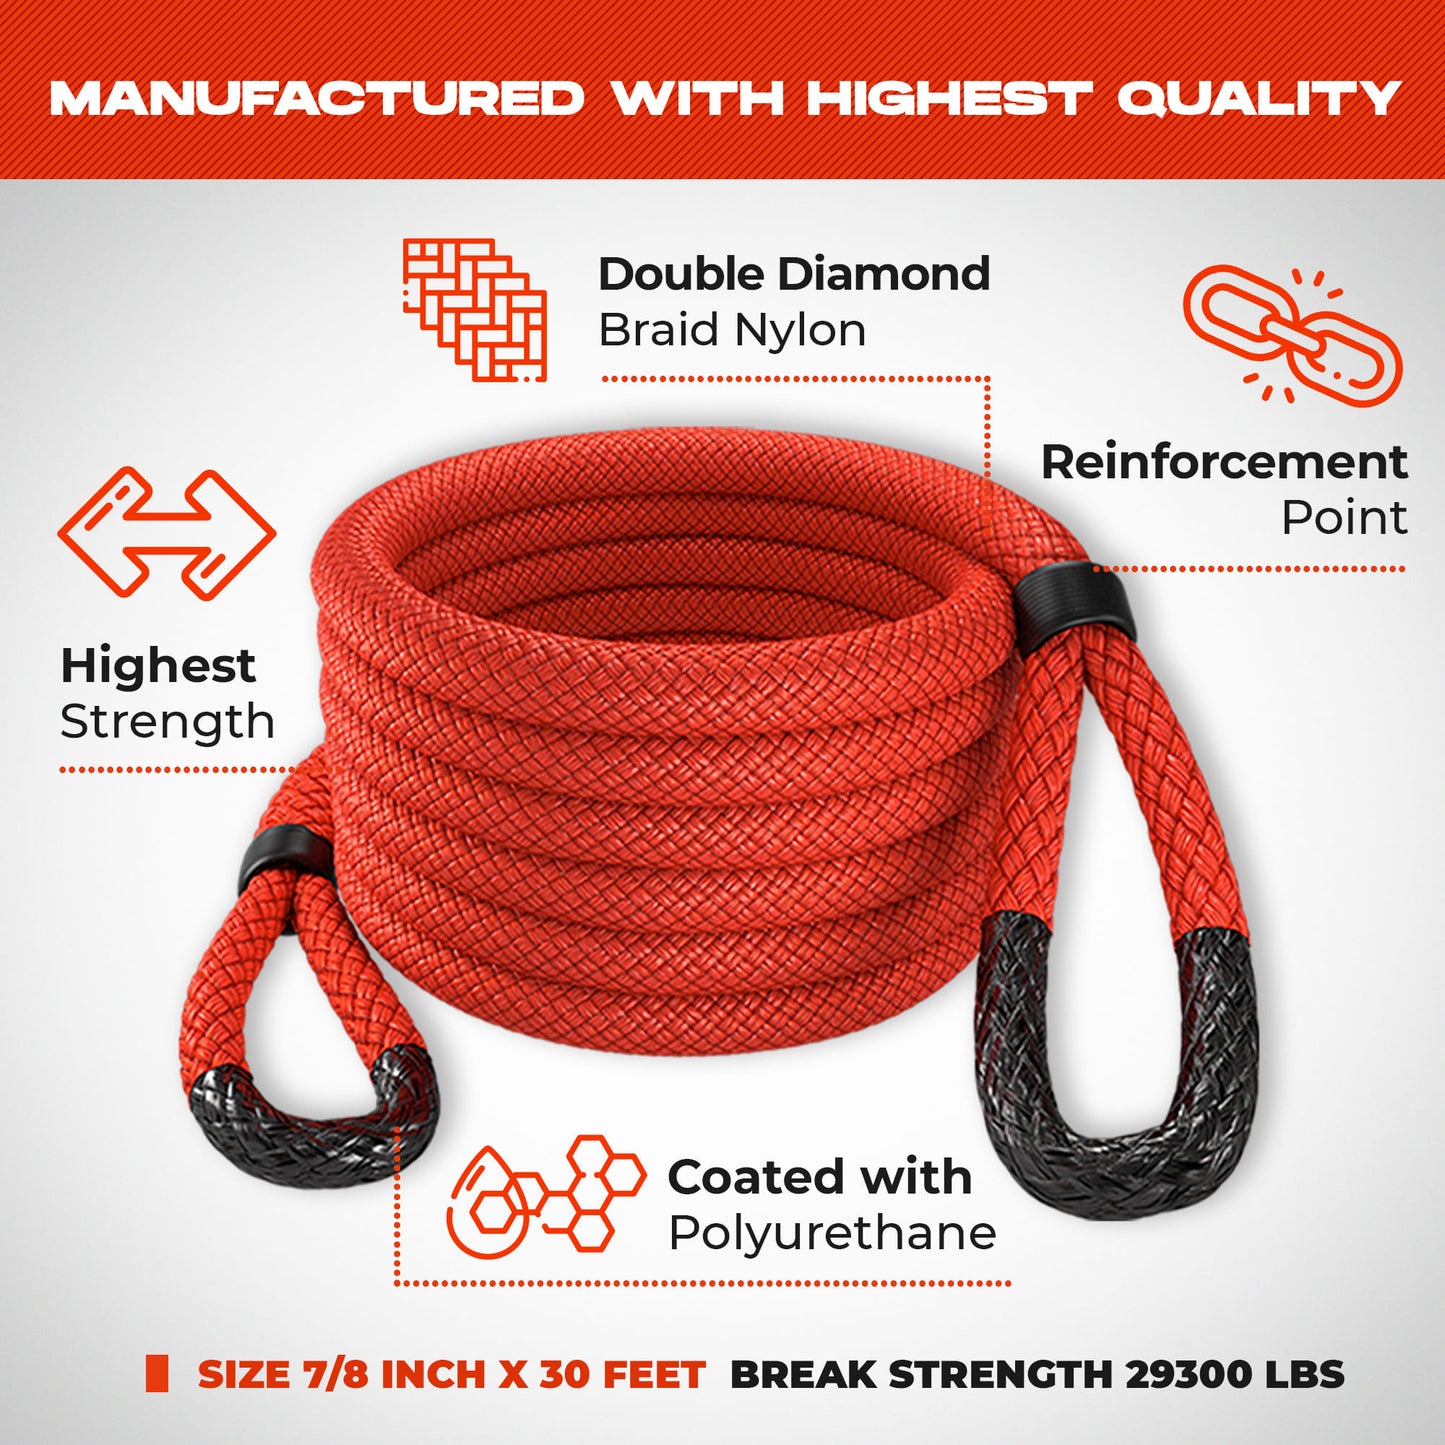 Cuerda de recuperación cinética - Miolle 7/8"x30' roja (29,300 lbs), con 2 grilletes blandos de fibra Spectra 3/8' x 6" (35000 lbs)